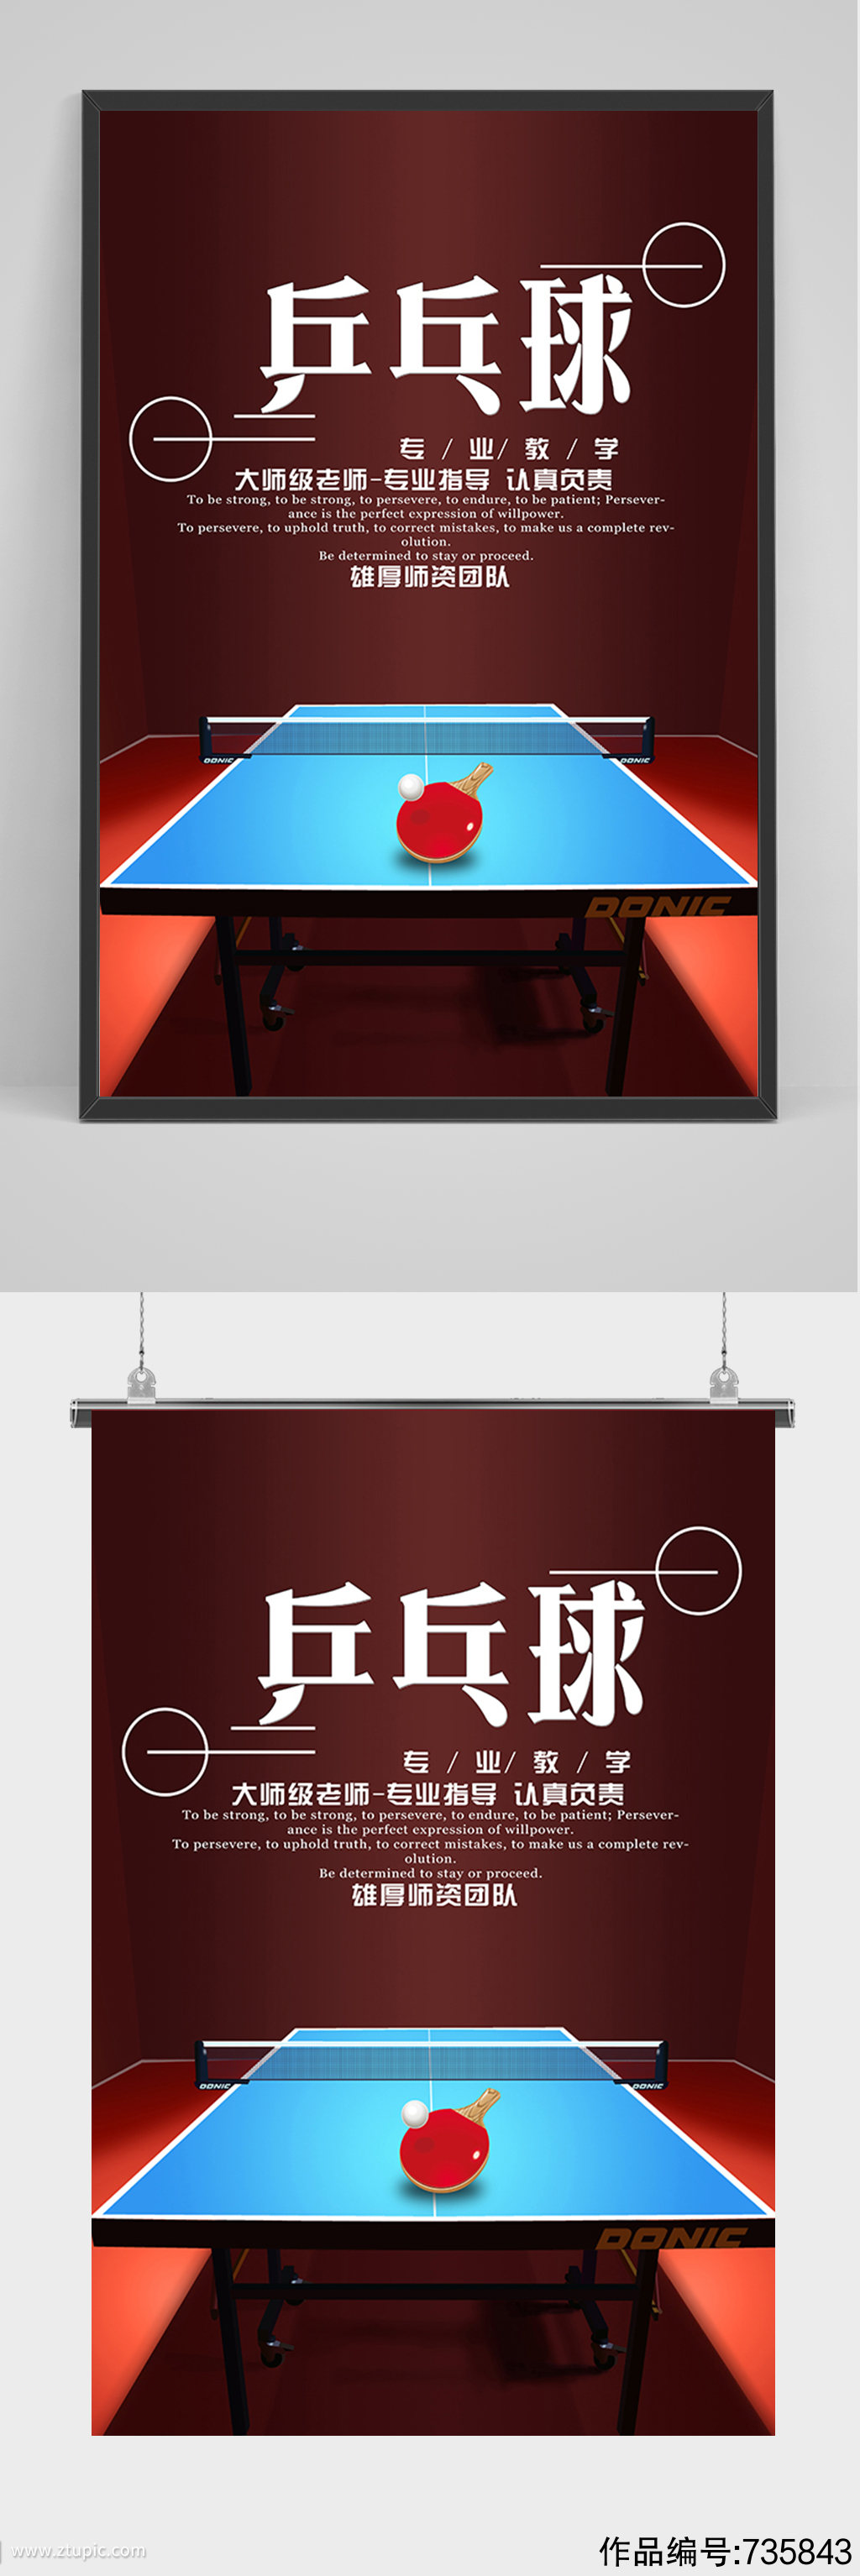 体育运动乒乓球海报素材